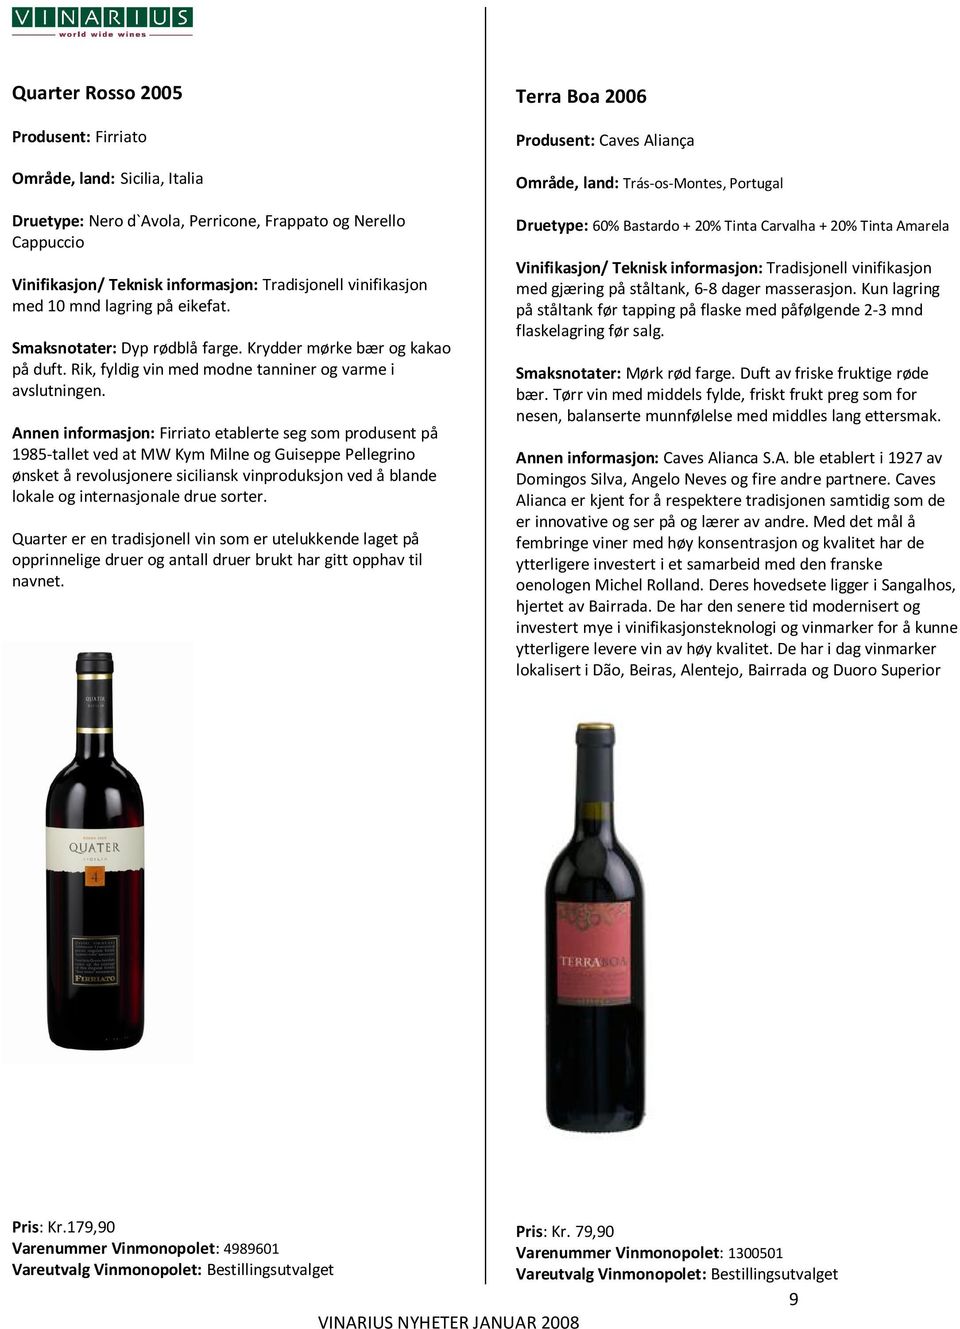 Annen informasjon: Firriato etablerte seg som produsent på 1985-tallet ved at MW Kym Milne og Guiseppe Pellegrino ønsket å revolusjonere siciliansk vinproduksjon ved å blande lokale og internasjonale